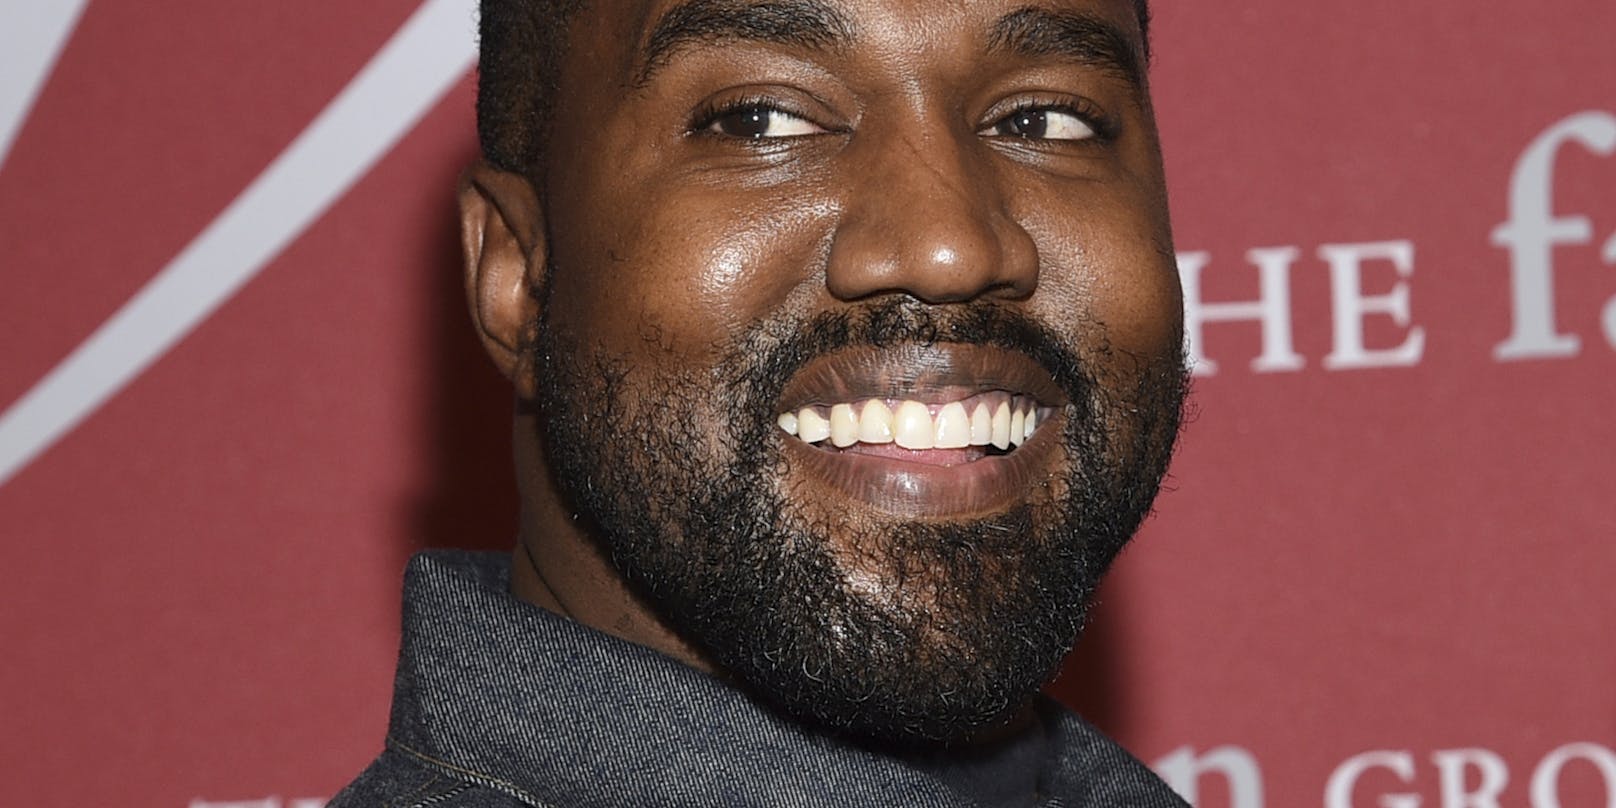 Die Firma MyChannel erhebt schwerwiegende Vorwürfe gegen Kanye West.